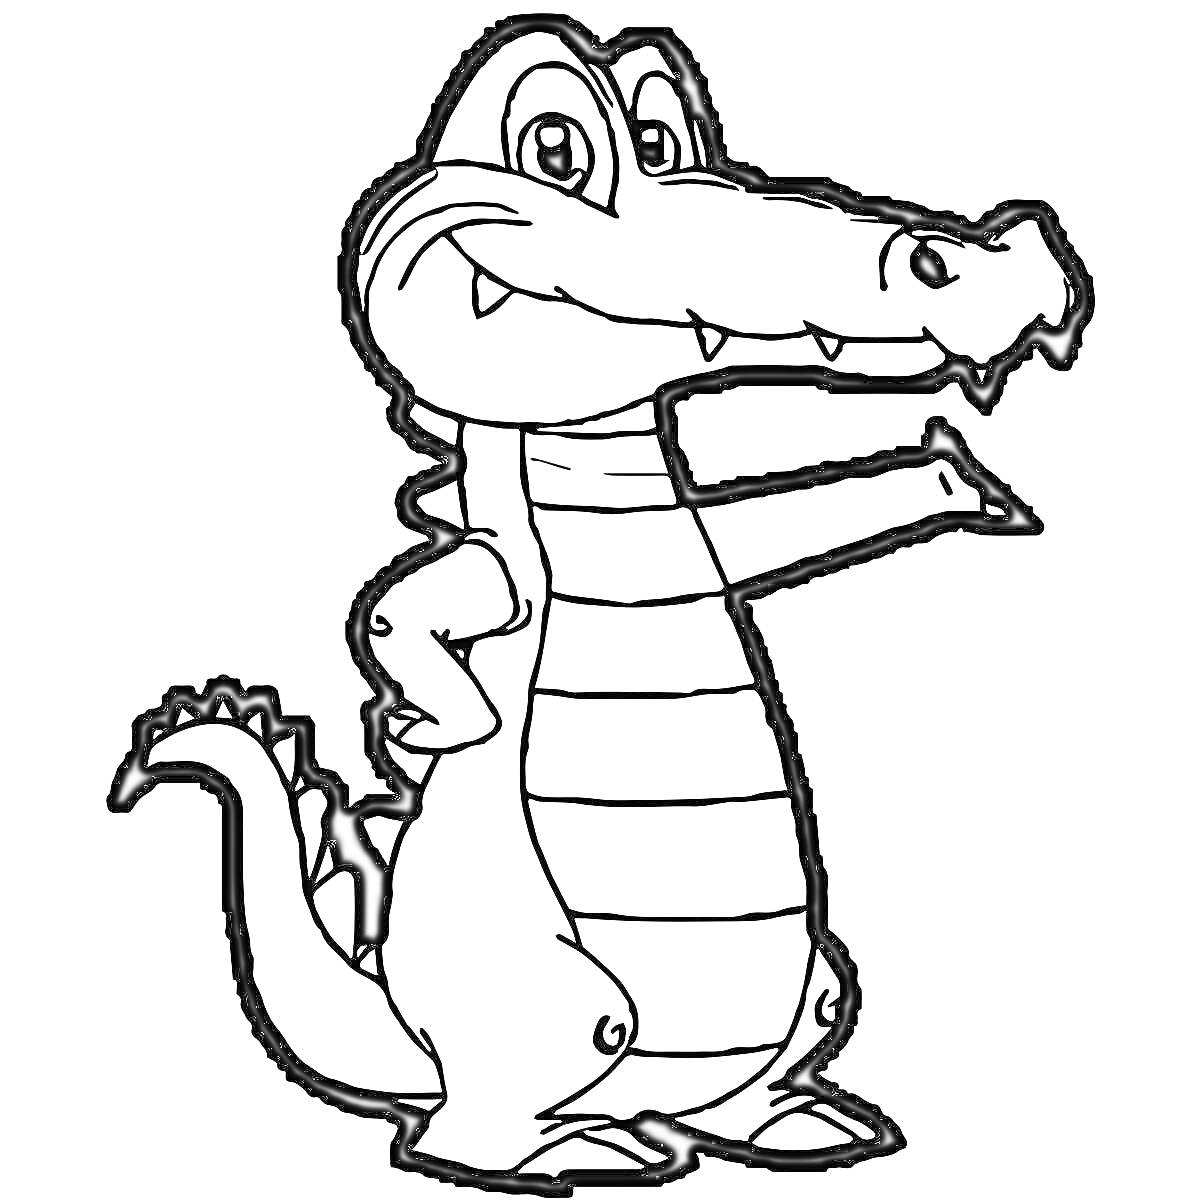 Раскраска Крокодил с полосатым животом и хвостом, стоящий на лапах, с открытым ртом и острыми зубами